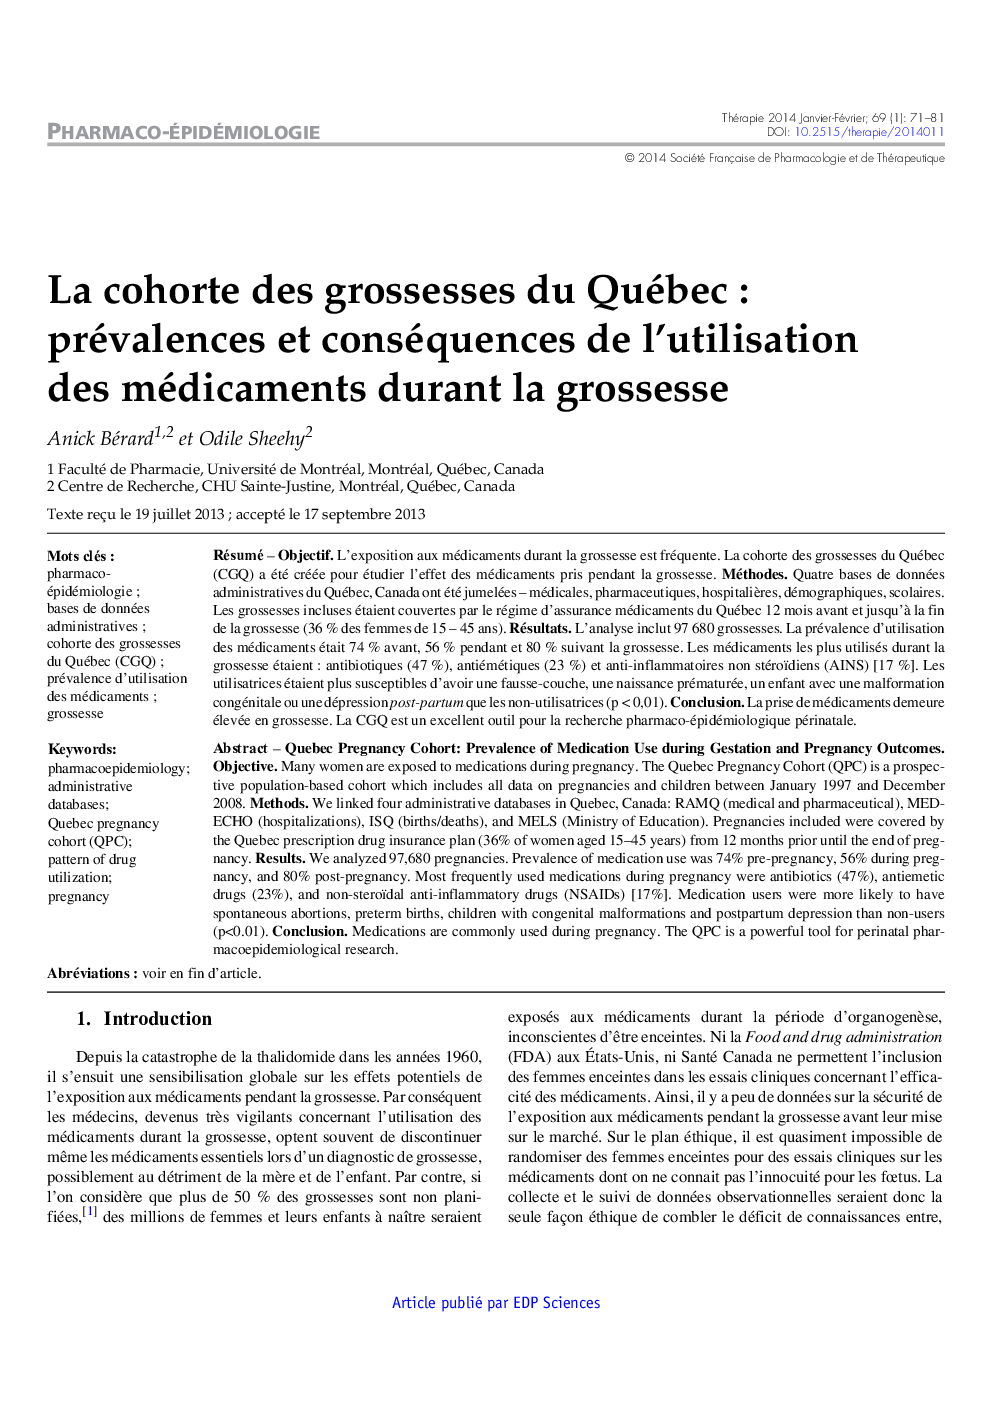 La cohorte des grossesses du Québec : prévalences et conséquences de l'utilisation des médicaments durant la grossesse